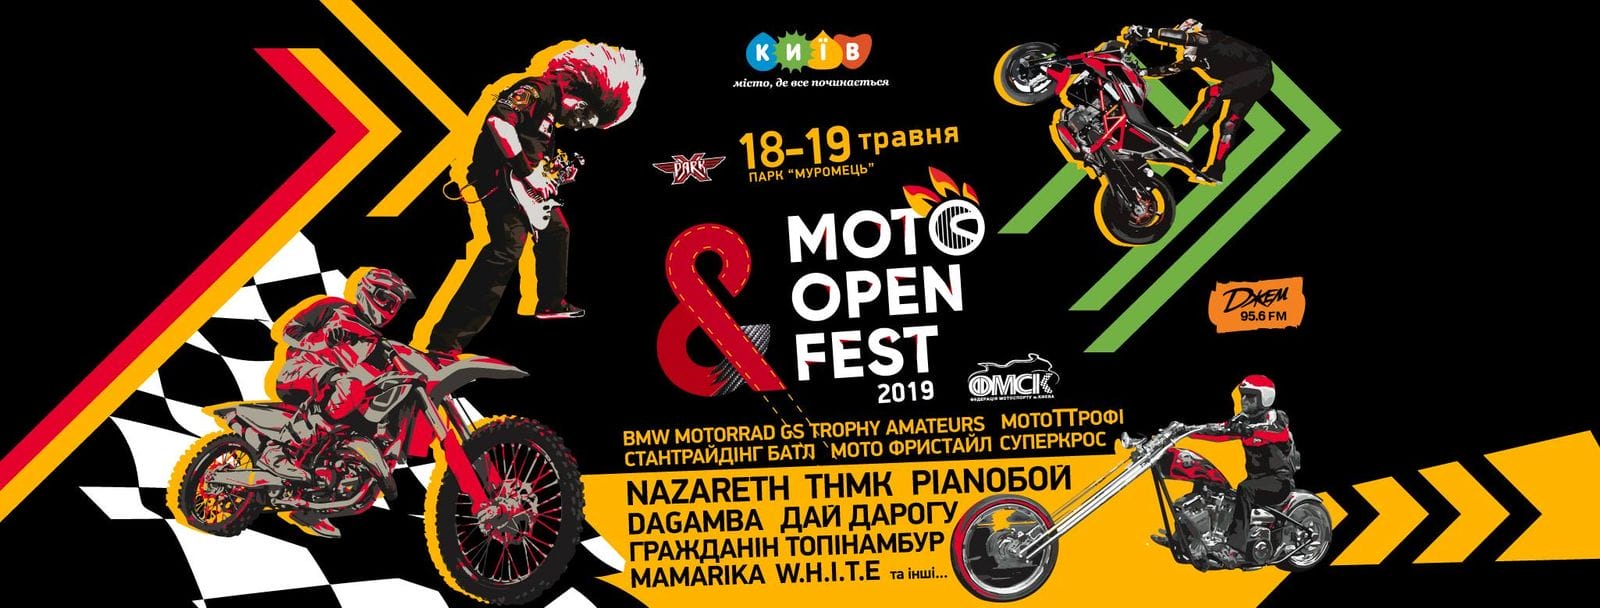 18-19 травня. Moto Open Fest 2019. Вхід - вільний!